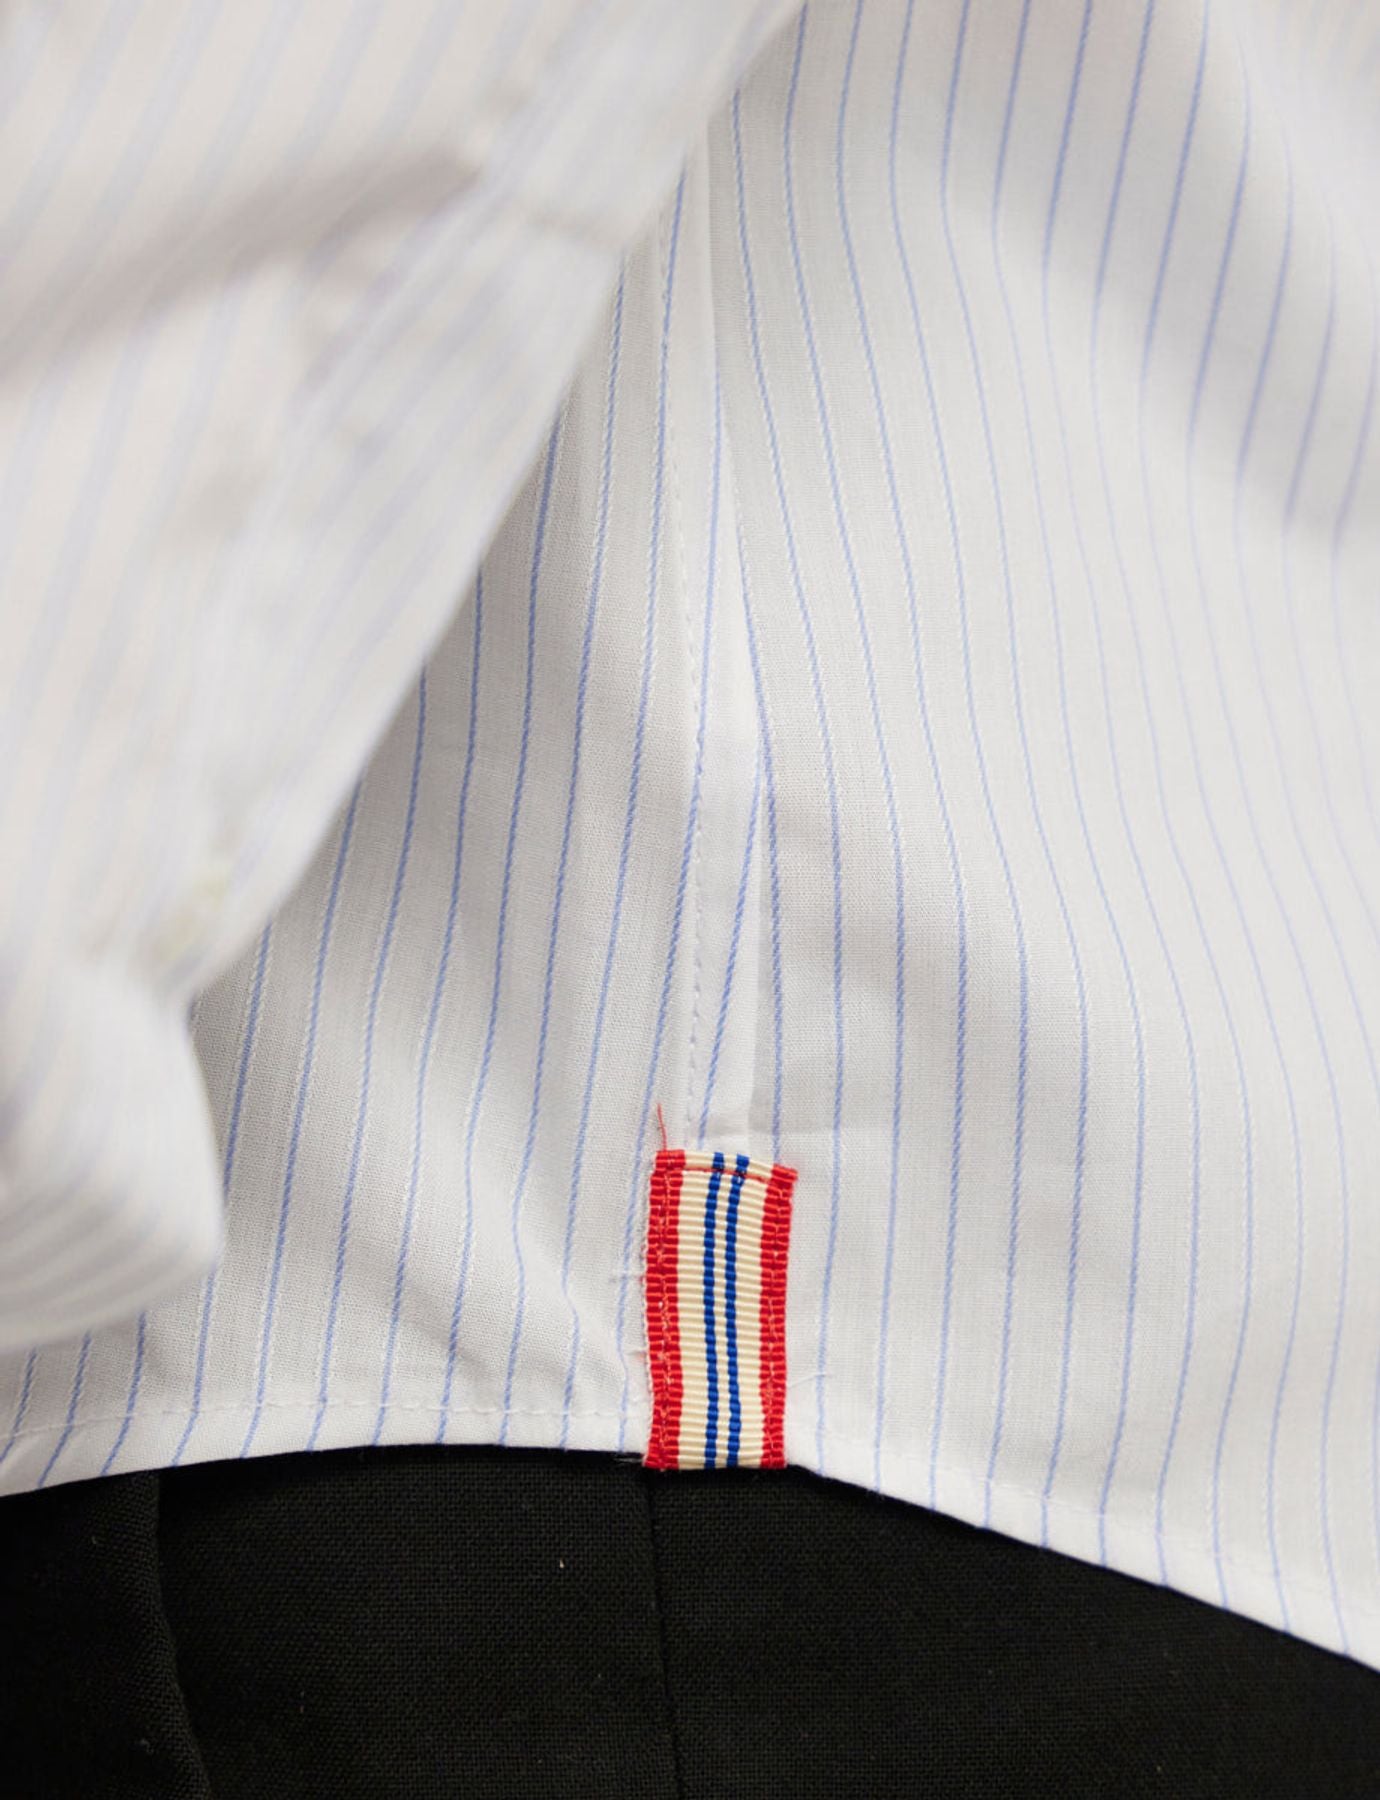 camicia uomo-bianco-oliva-bianco-fine-stripes